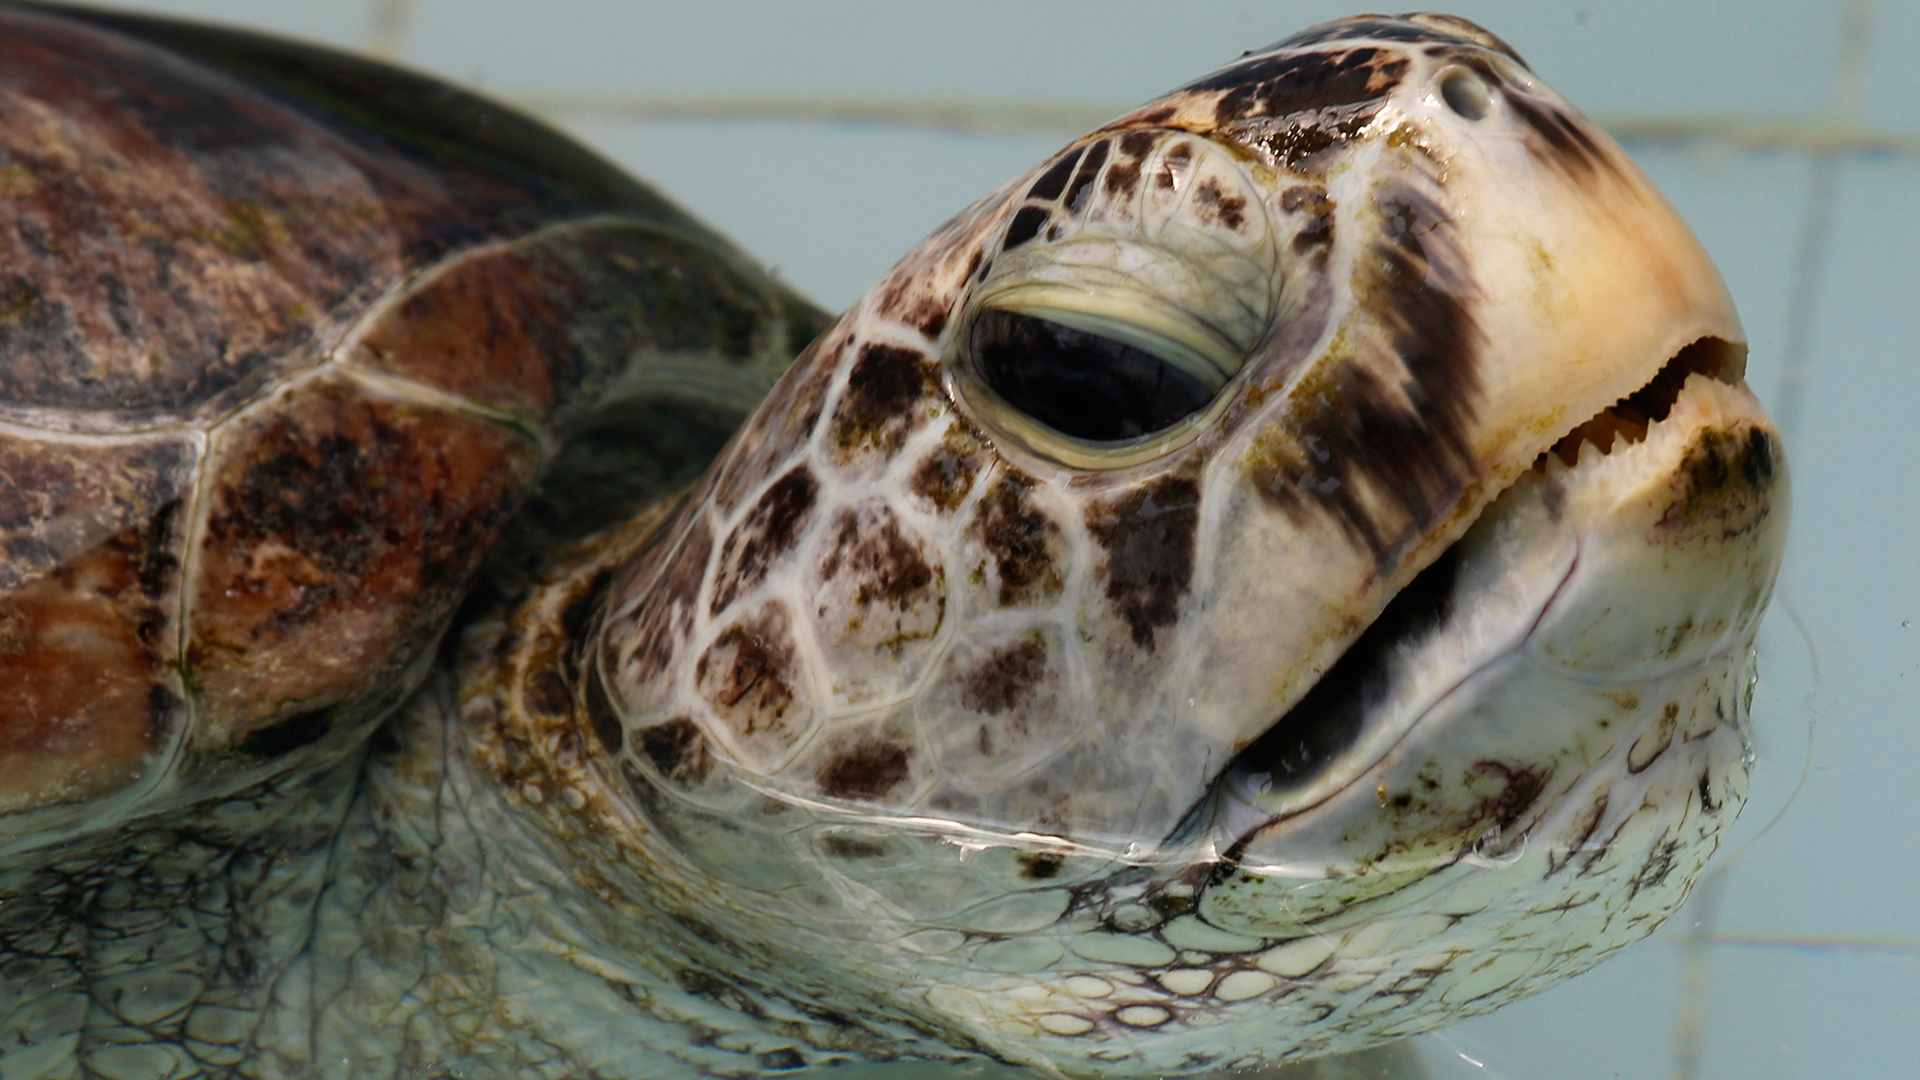 Extraen 915 monedas de una tortuga marina en Tailandia